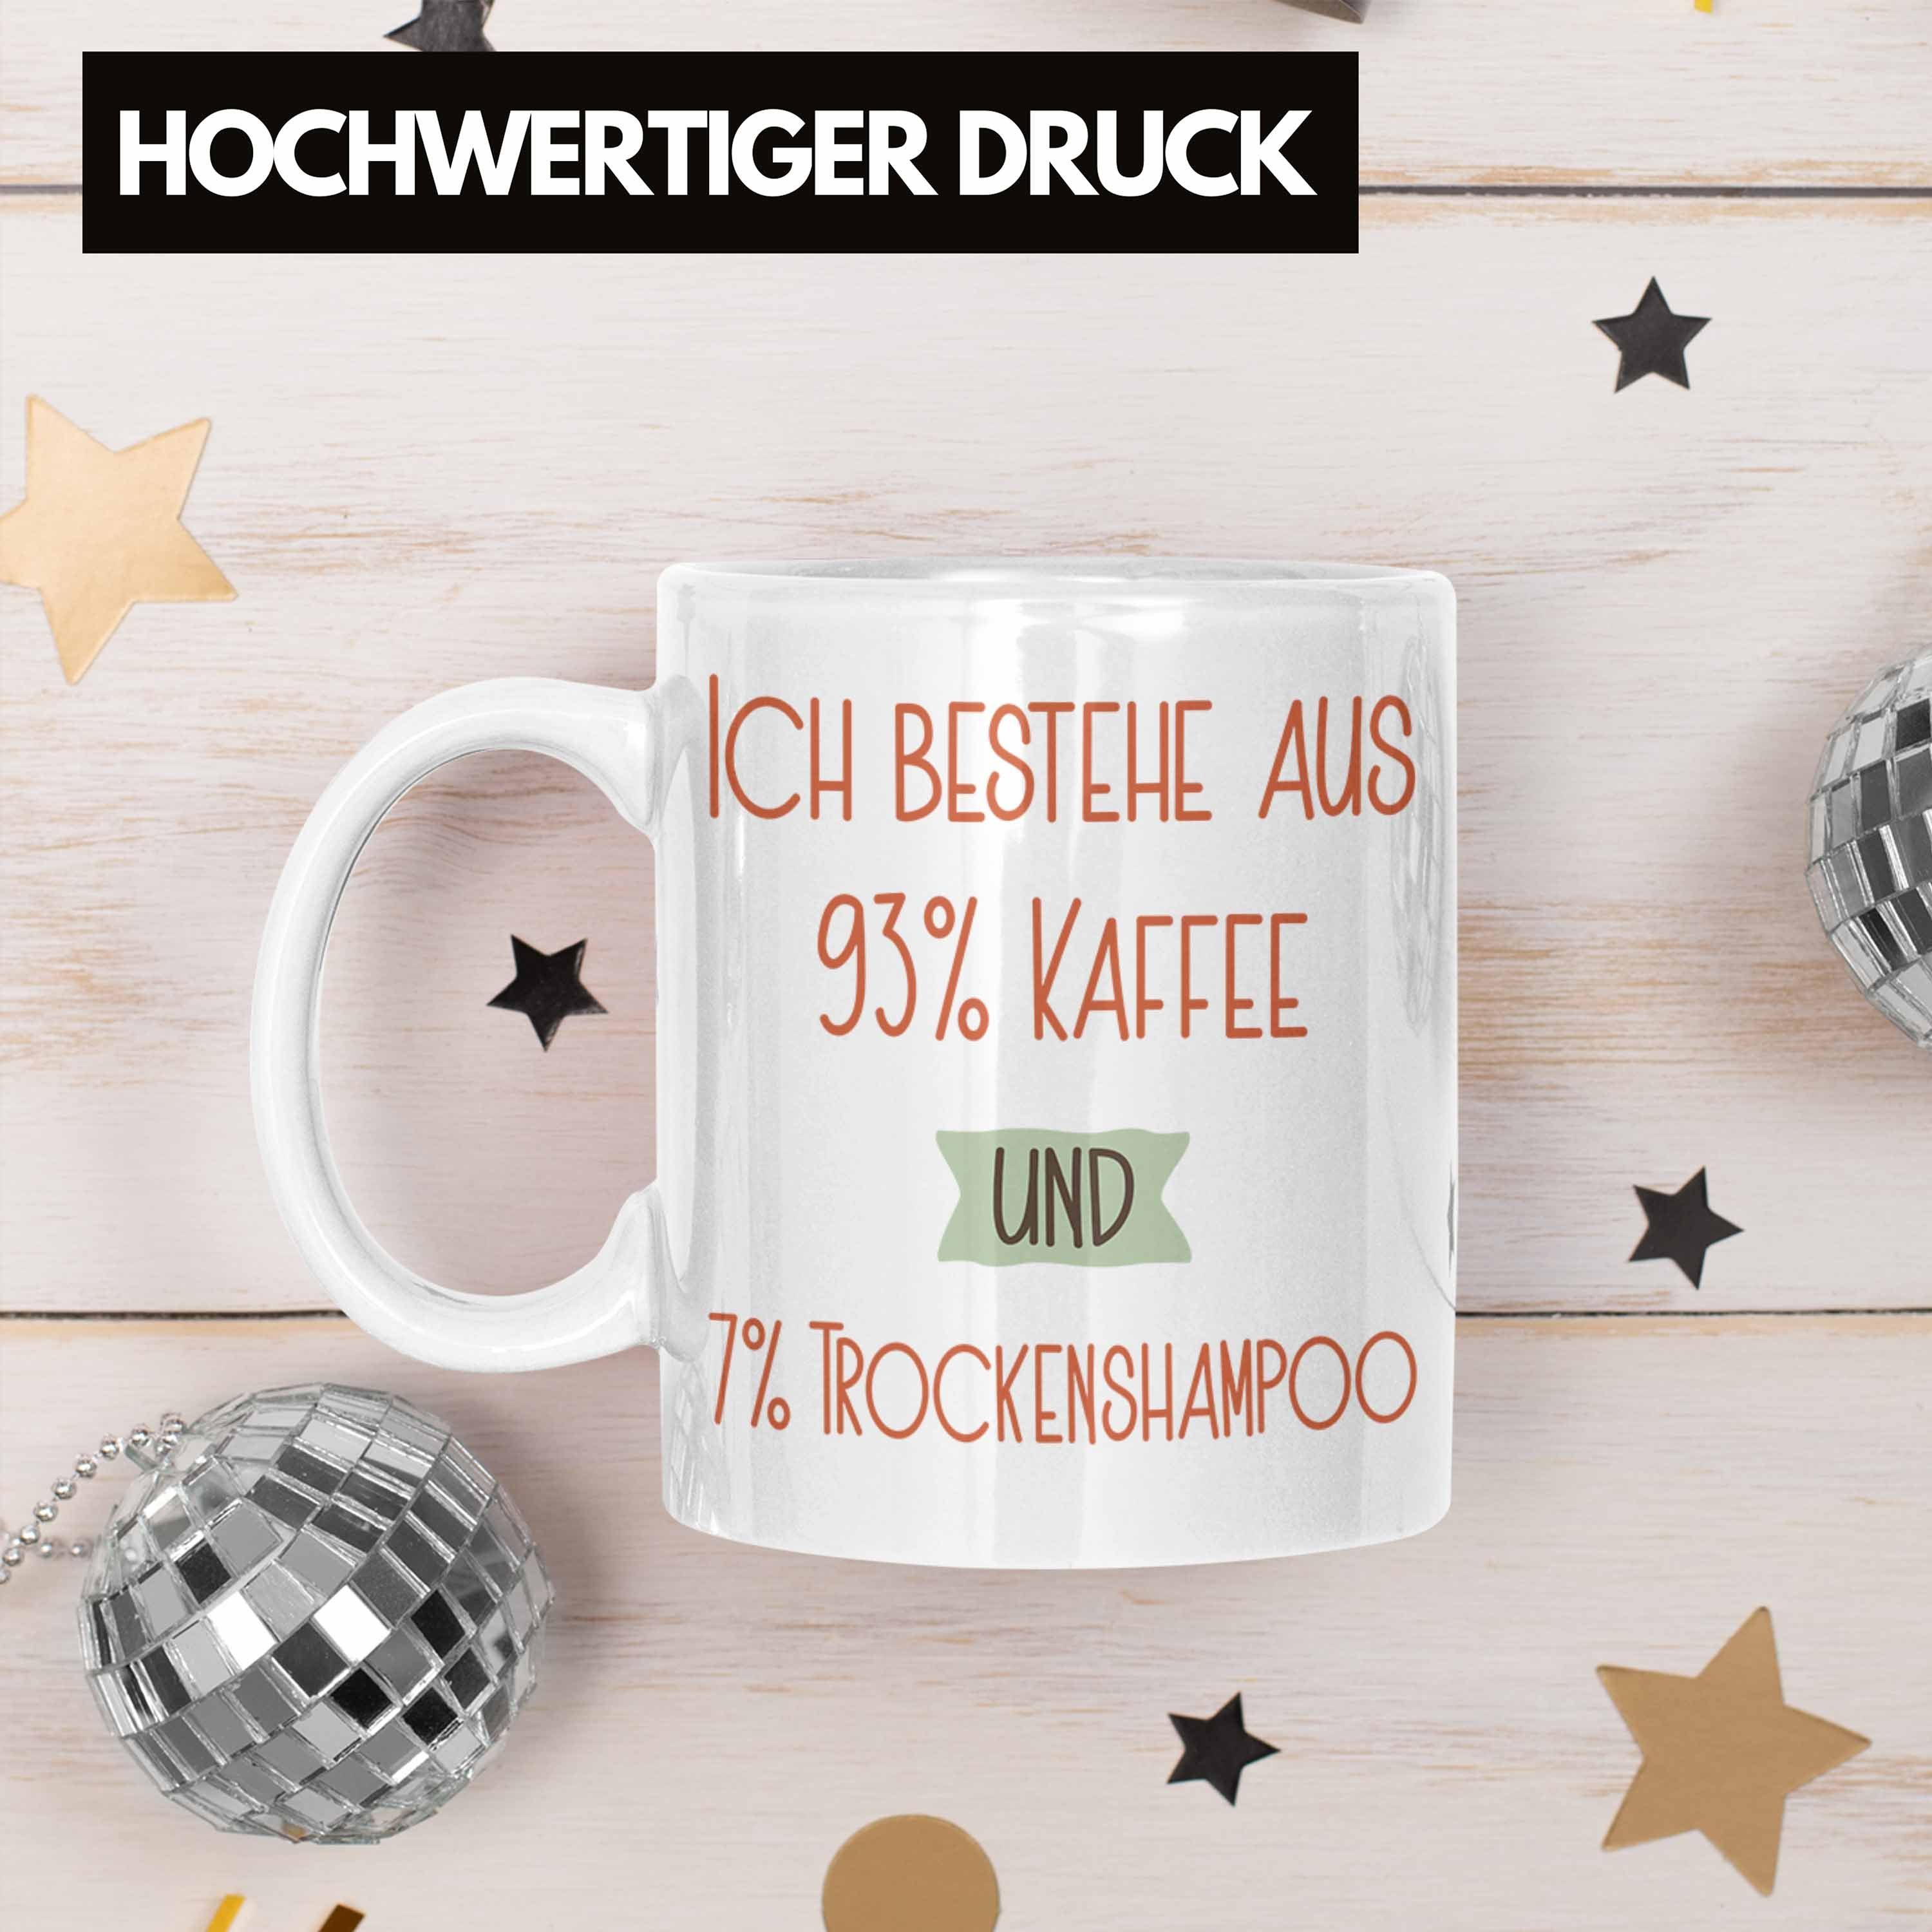 Trendation Tasse 93% Kaffee Spruch Geschenk Tasse 7% Lustiger Trockenshampoo Für Weiss Ko und